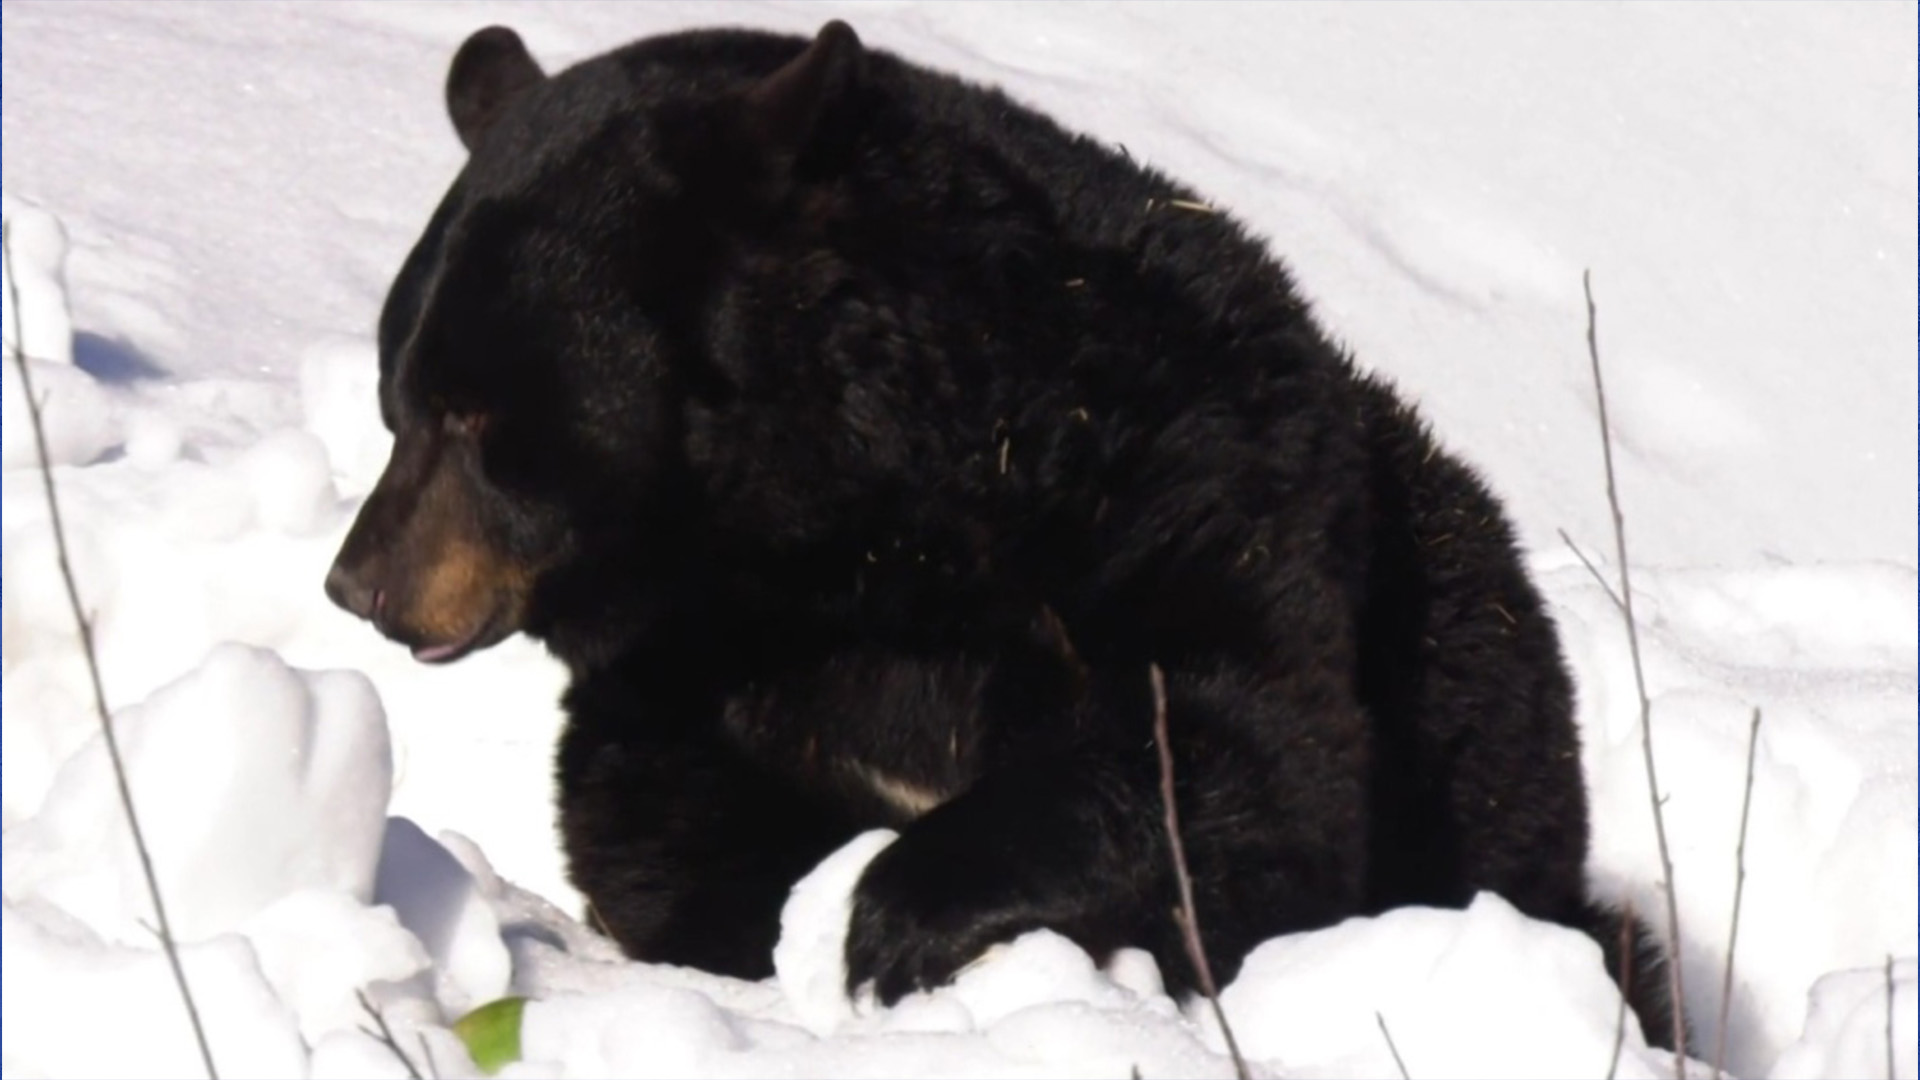 Genie l'ours est sorti de son hibernation à l'Écomusée de Montréal, signalant le début du printemps.